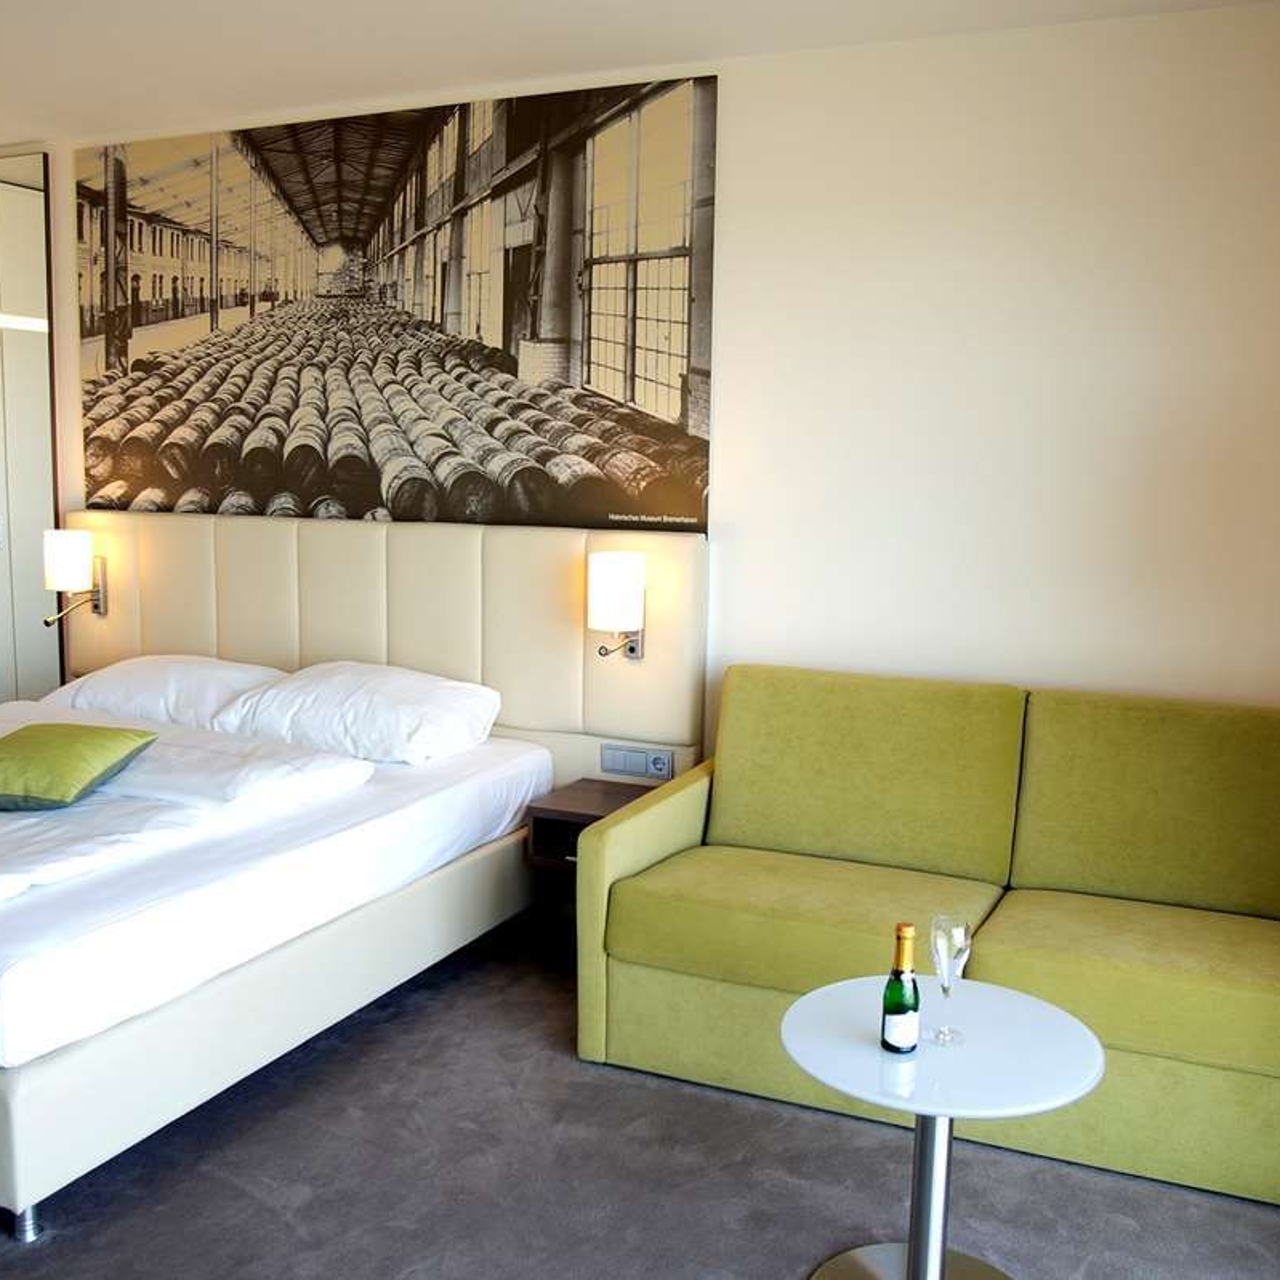 Best Western Plus Hotel Bremerhaven Bremerhaven bei HRS günstig buchen